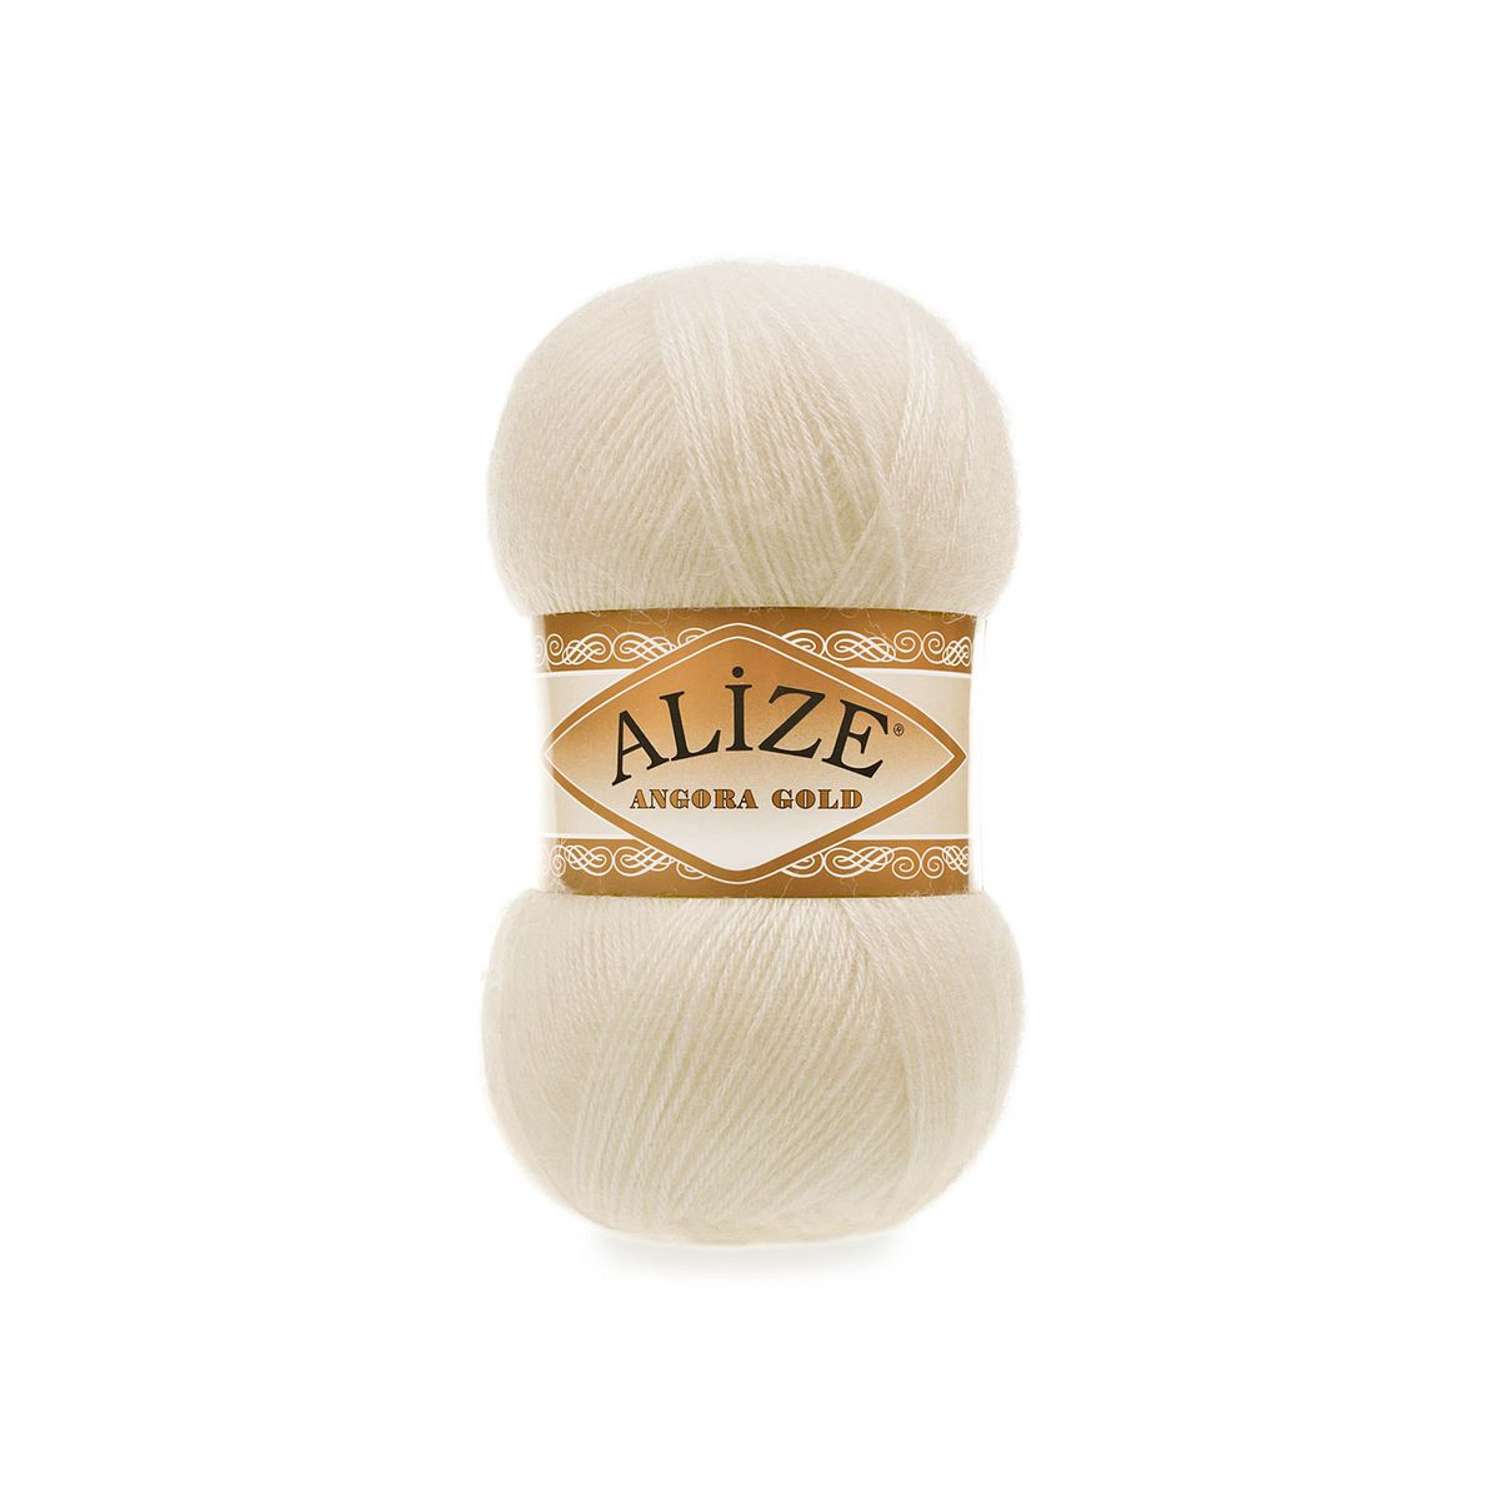 Пряжа Alize мягкая теплая для шарфов кардиганов Angora Gold 100 гр 550 м 5 мотков 450 жемчужный - фото 6